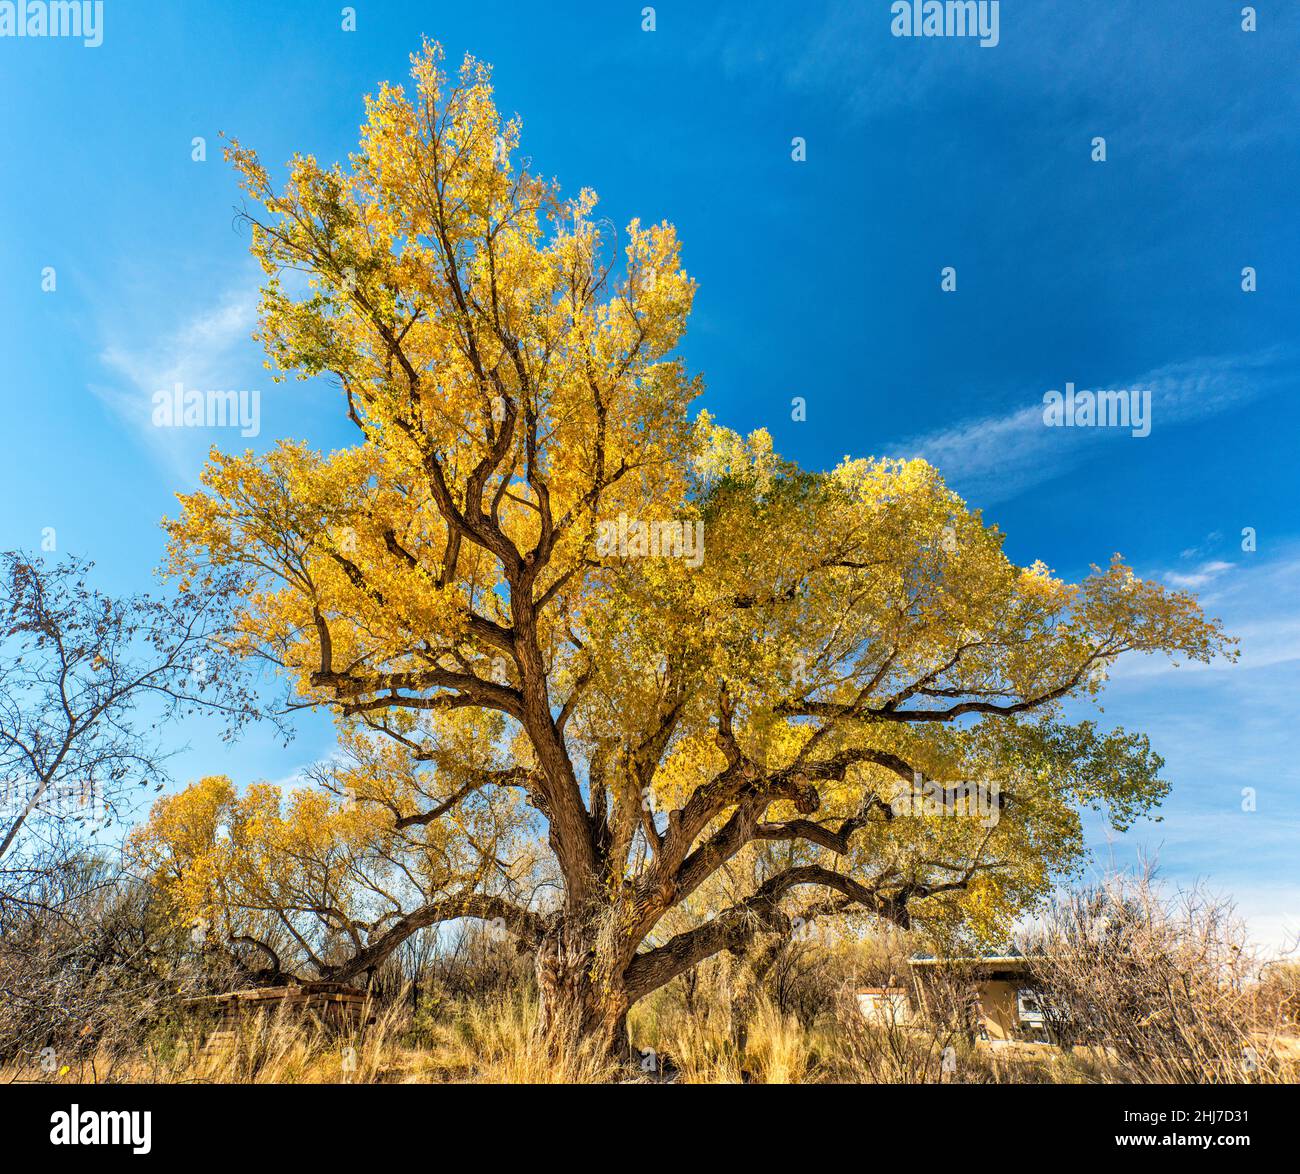 Grand arbre de coton de Fremont, 120 ans, en feuillage d'automne, à San Pedro House, San Pedro Riparian NCA, près de Sierra Vista, Arizona, États-Unis Banque D'Images